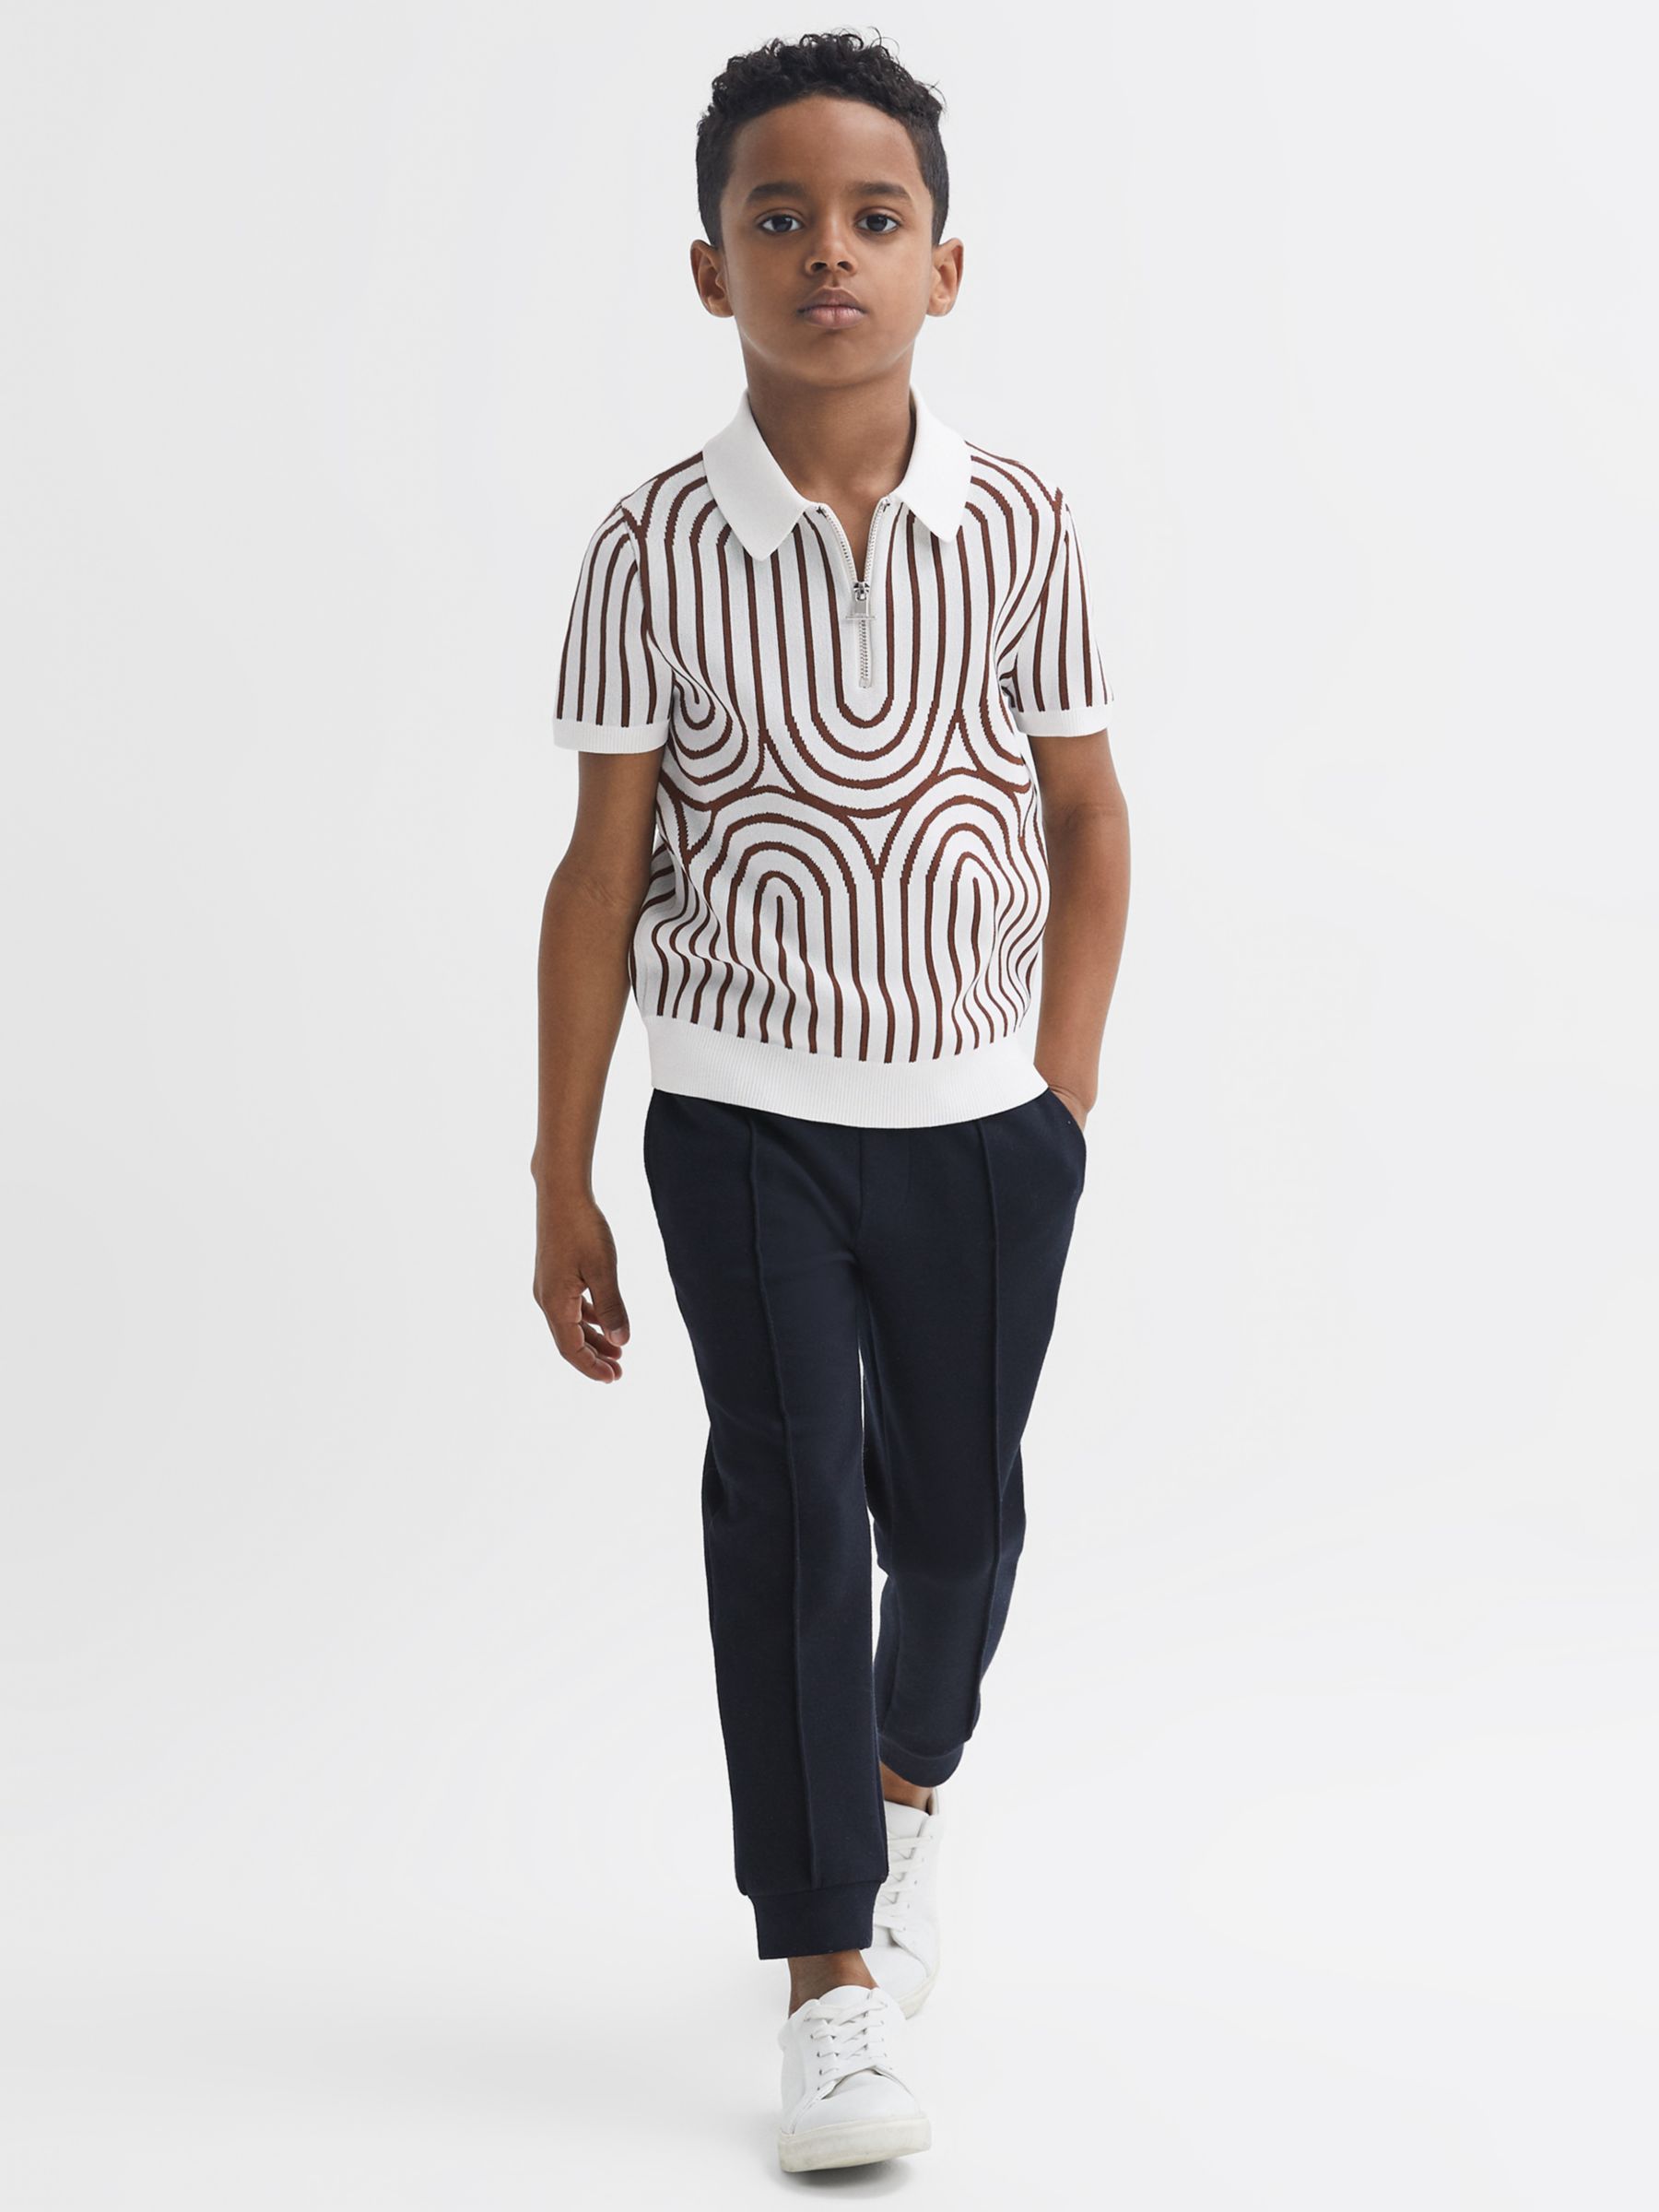 Reiss Kids' Maycross Wave Half Zip Short Sleeve Top, White/Brown